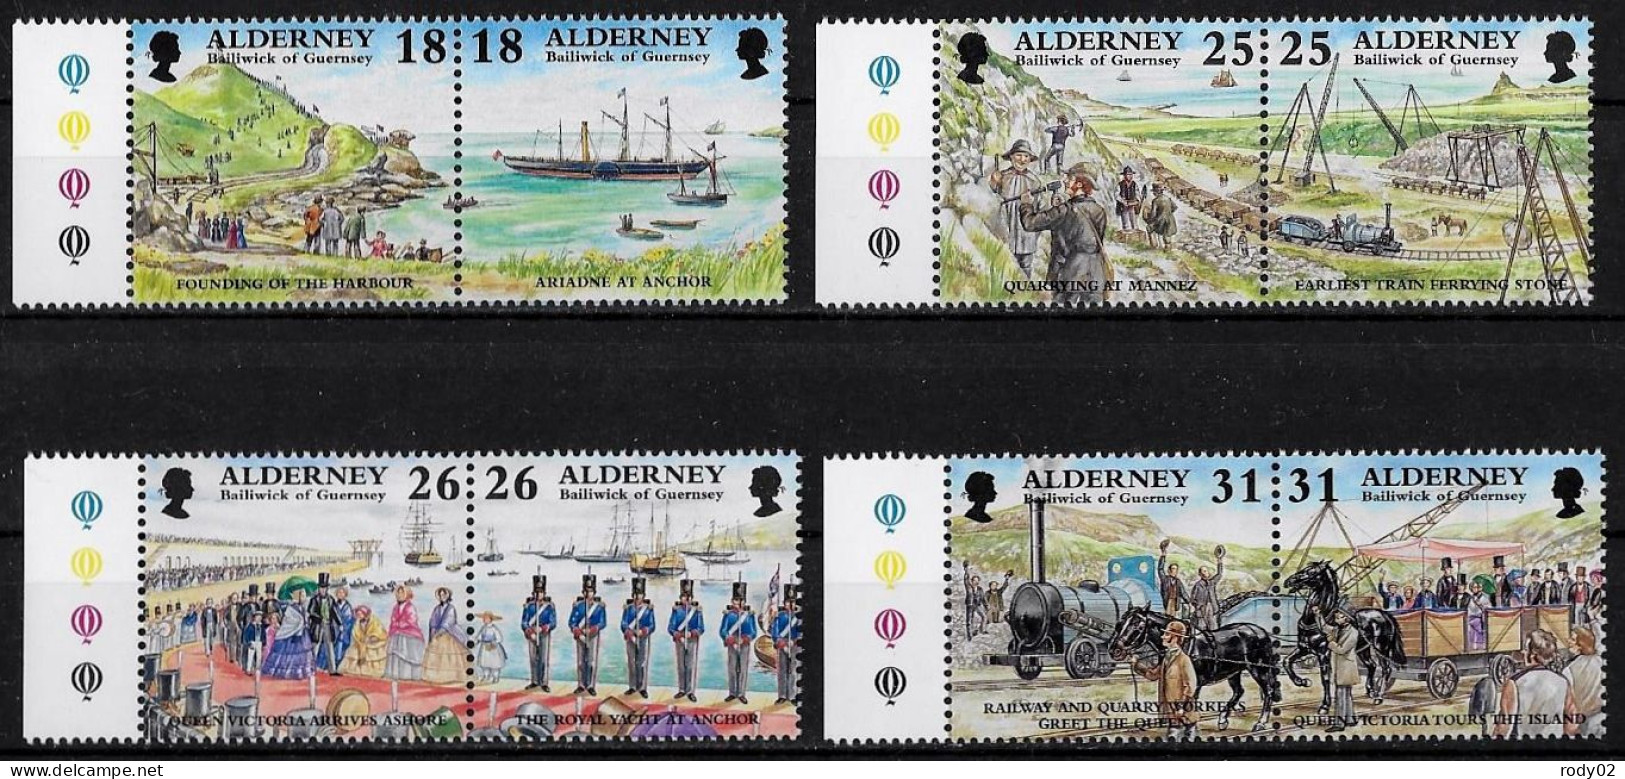 AURIGNY - EVENEMENTS HISTORIQUES - N° 108 A 115 ET 159 A 166 - NEUF** MNH - Alderney